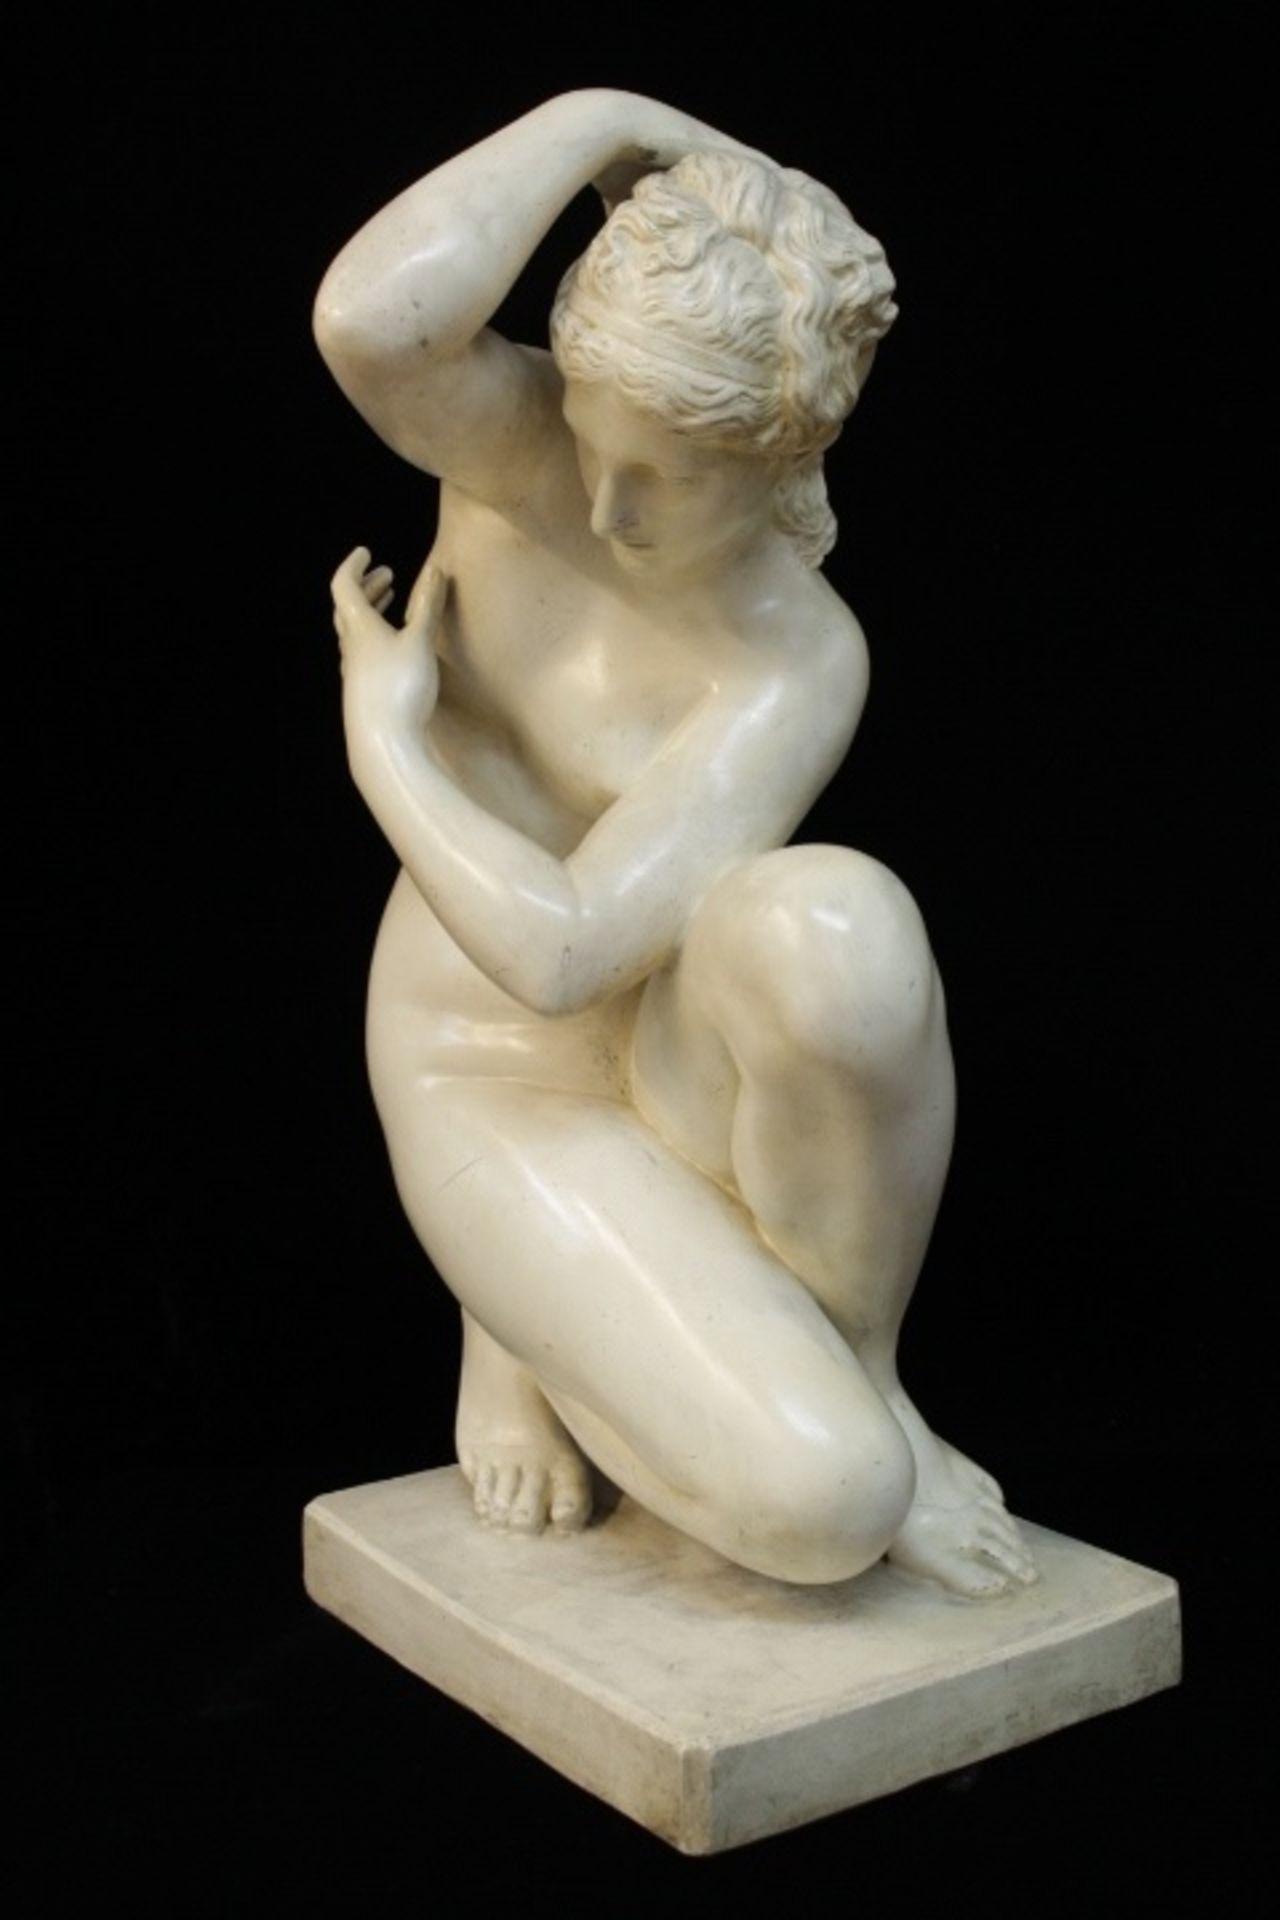 Mädchen Akt Skulptur Knieende « ungemarkt sehr dekorativ wohl Gips H:73xm wohl um 1900 - Bild 2 aus 3